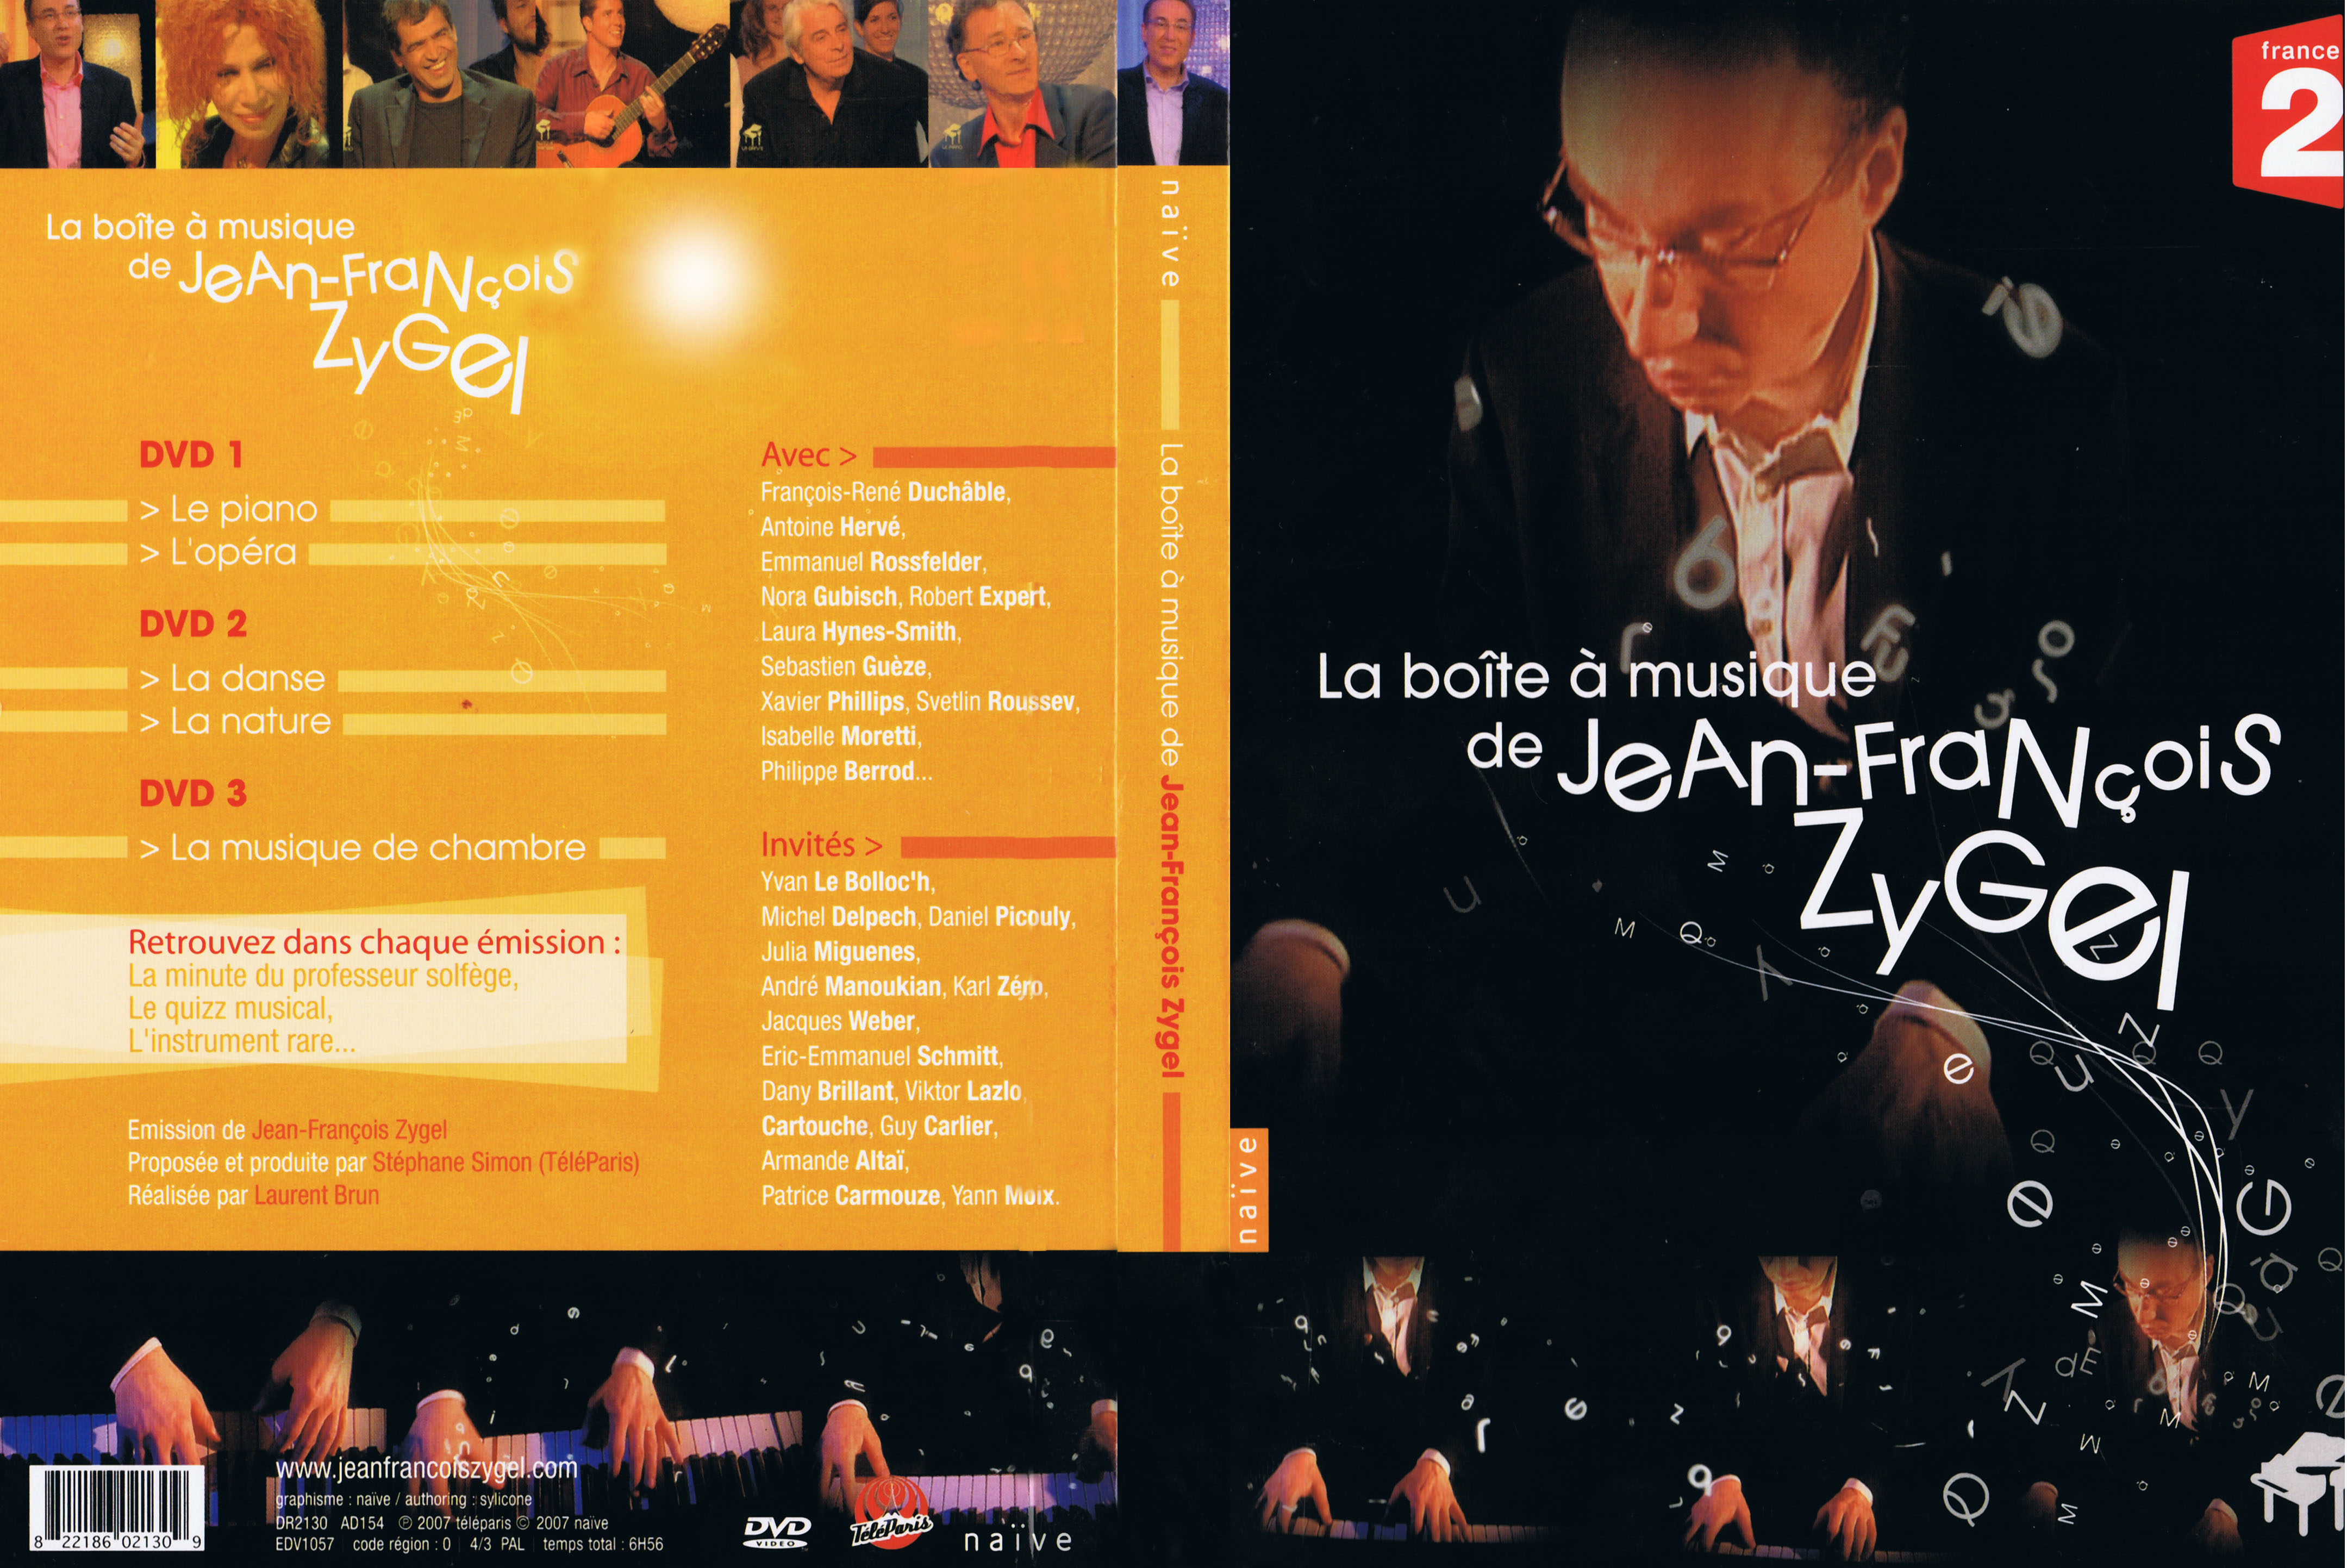 Jaquette DVD La boite  musique de Jean-Francois Zygel